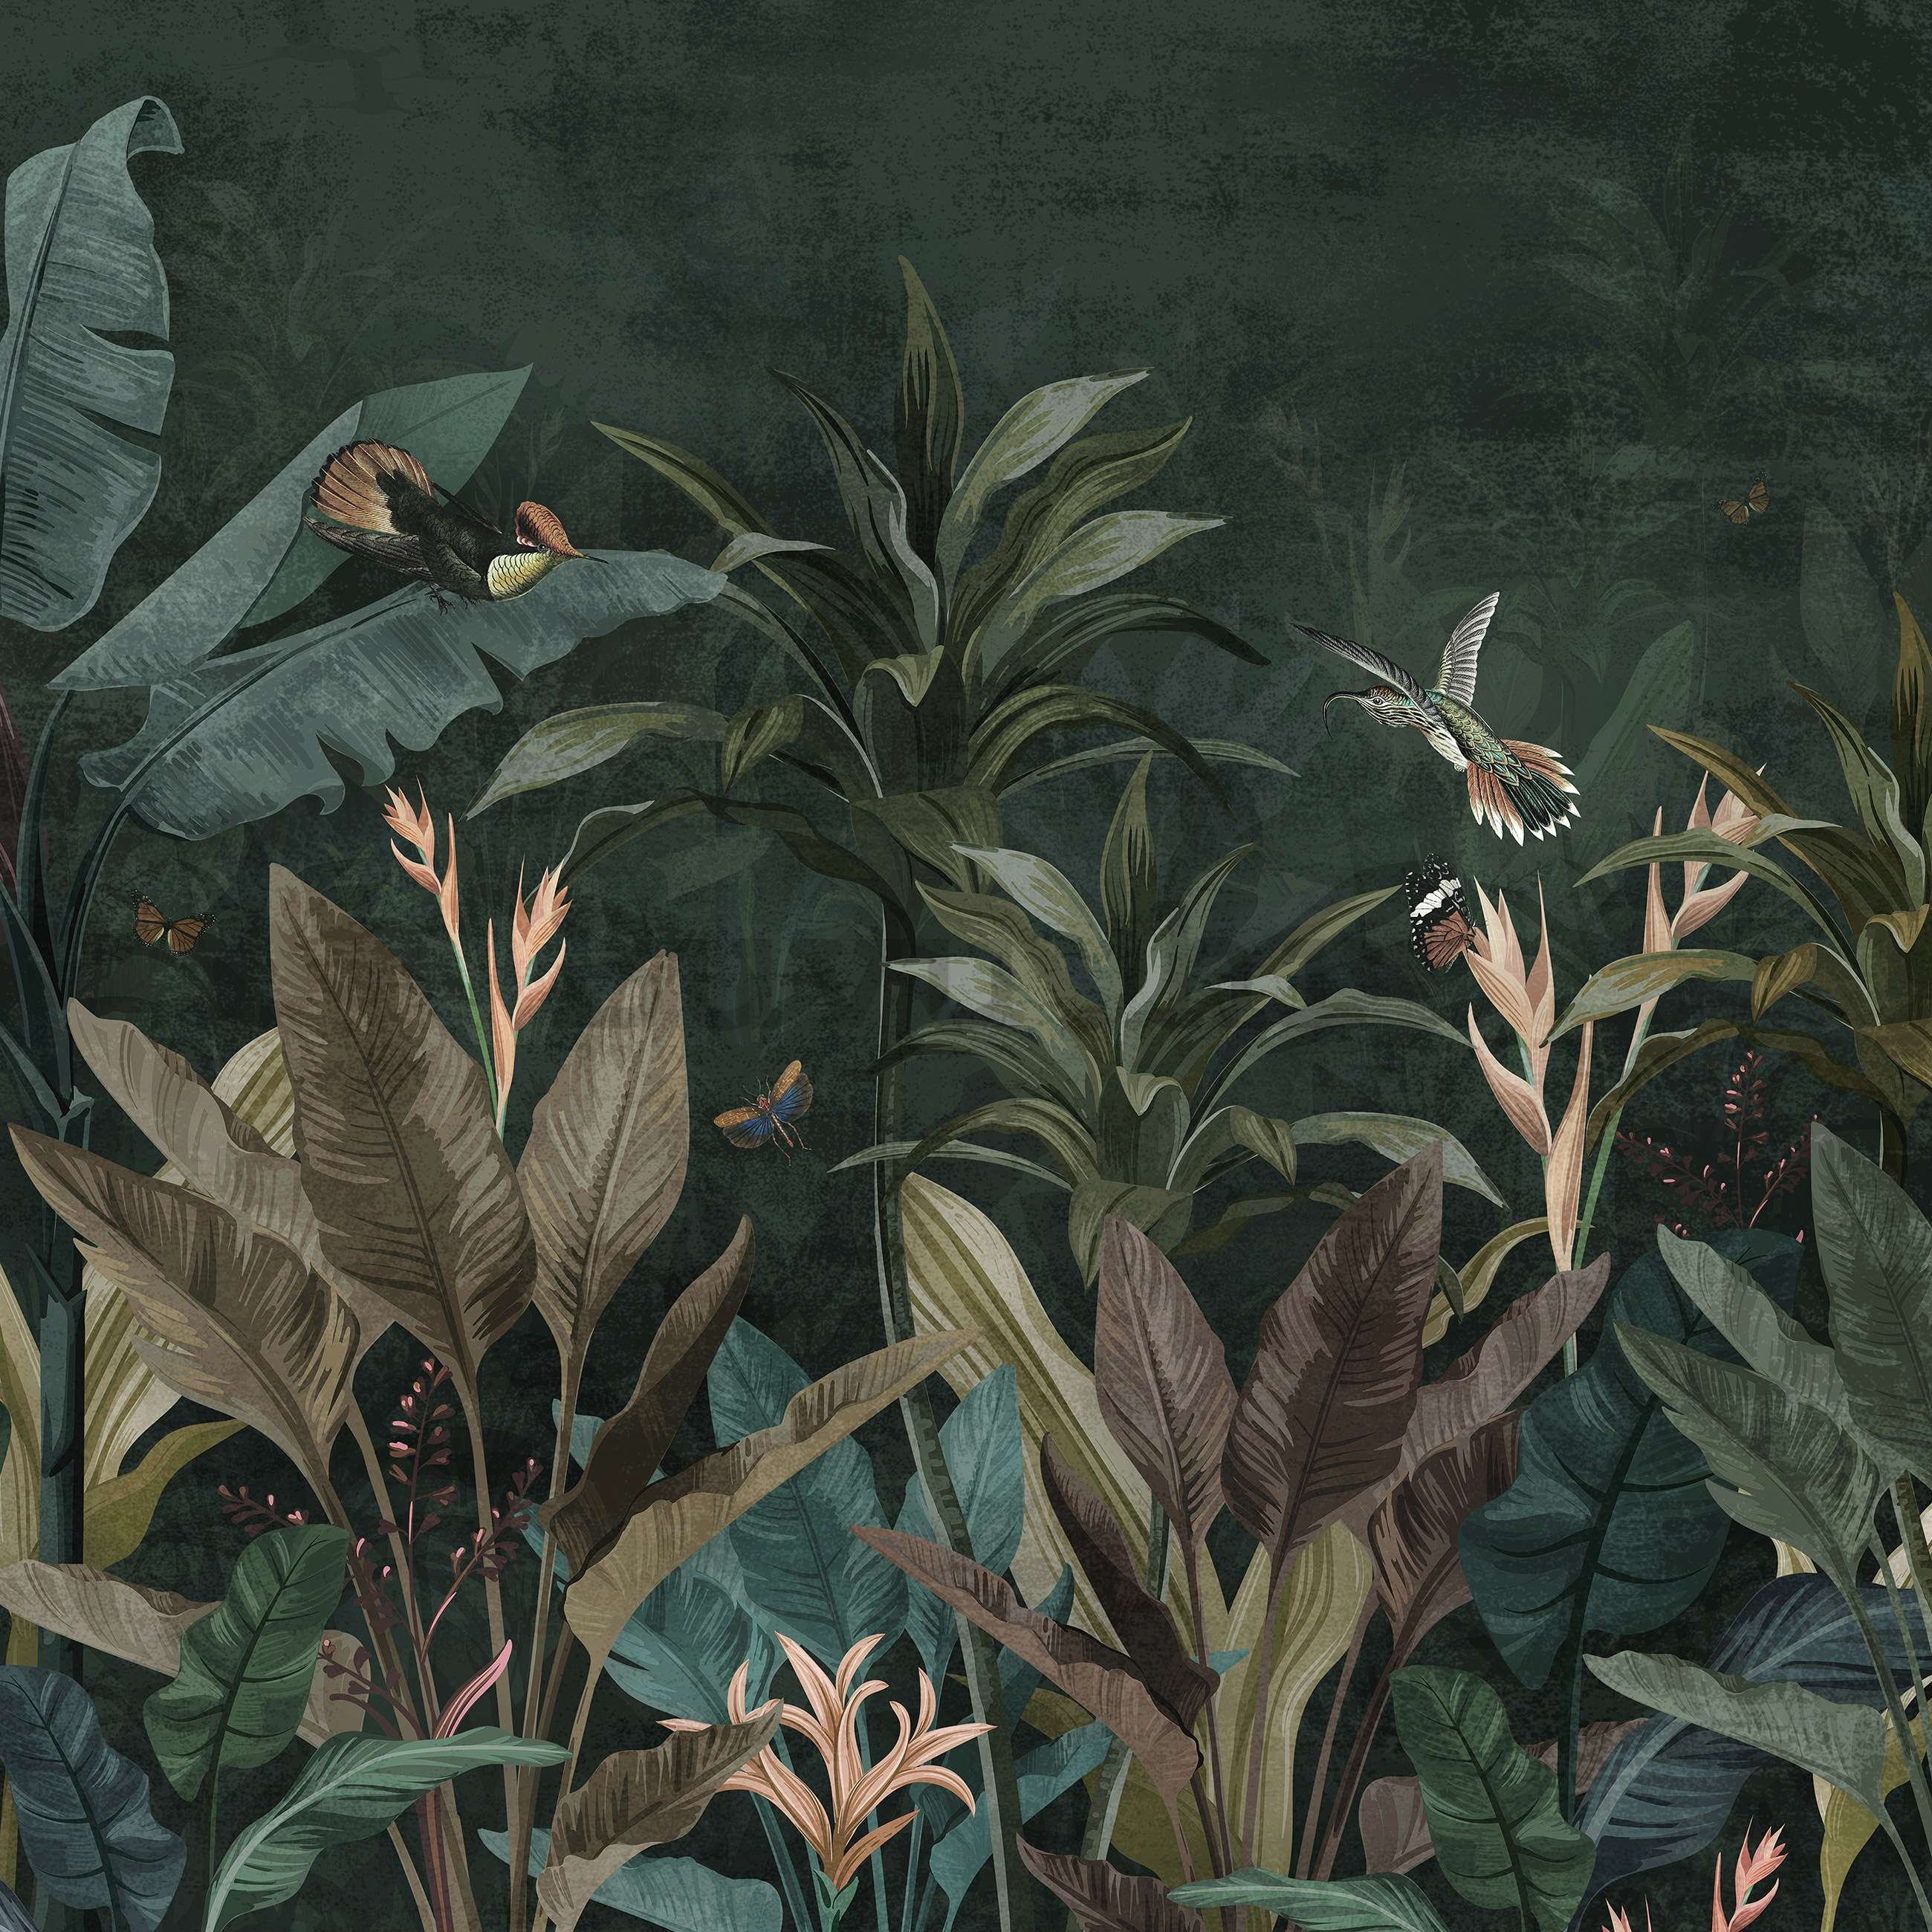 Vlies foto tapeta: Životinje iz džungle (ptice i leptiri) - 416x254 cm